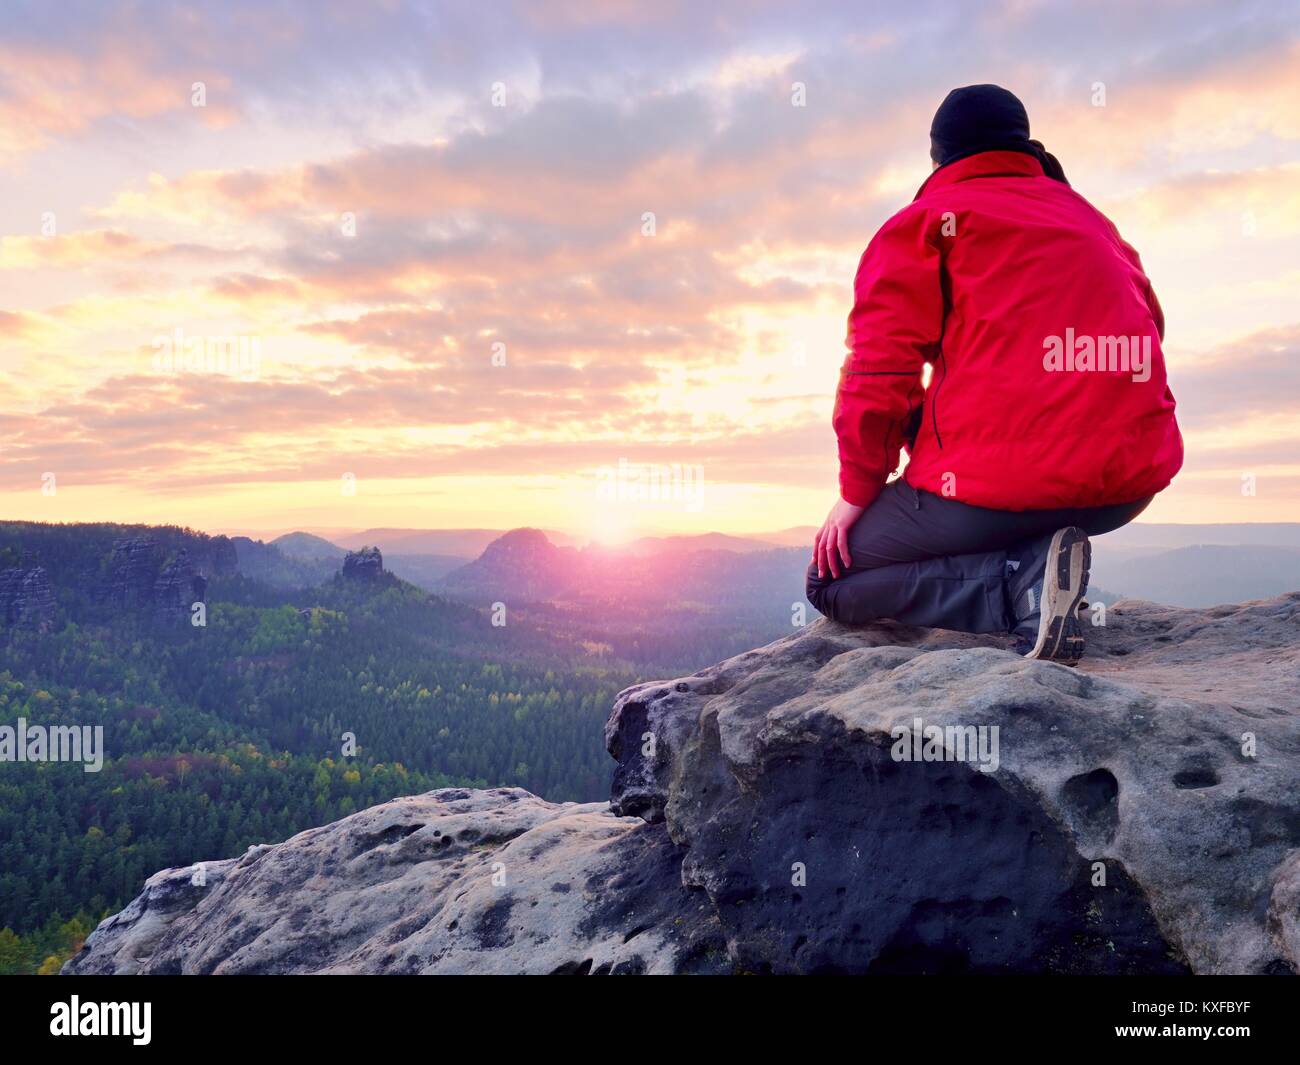 Sitzung Wanderer auf Rock. Mann in Rot Schwarz warme Kleidung sitzt auf Felsen und weiten Blick genießen. Blick in Misty hügeligen Tal unten Stockfoto